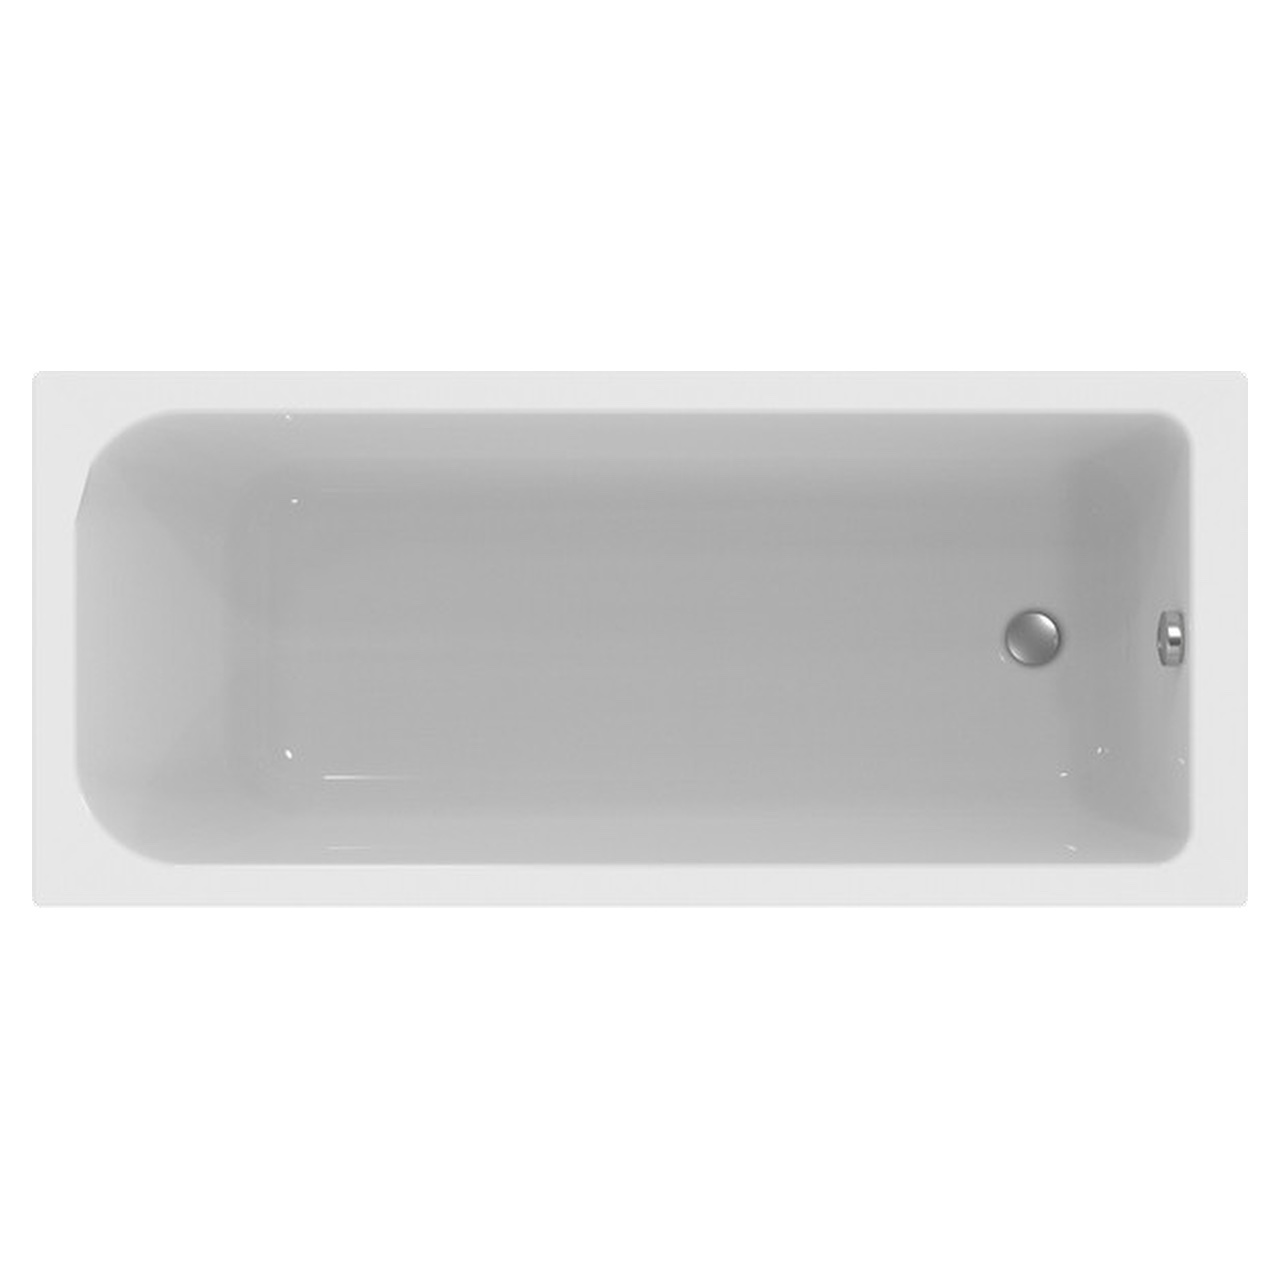 Rechteck Acryl Badewanne made by Ideal Standard 170 × 75 × 45 cm mit Träger und Ablaufgarnitur